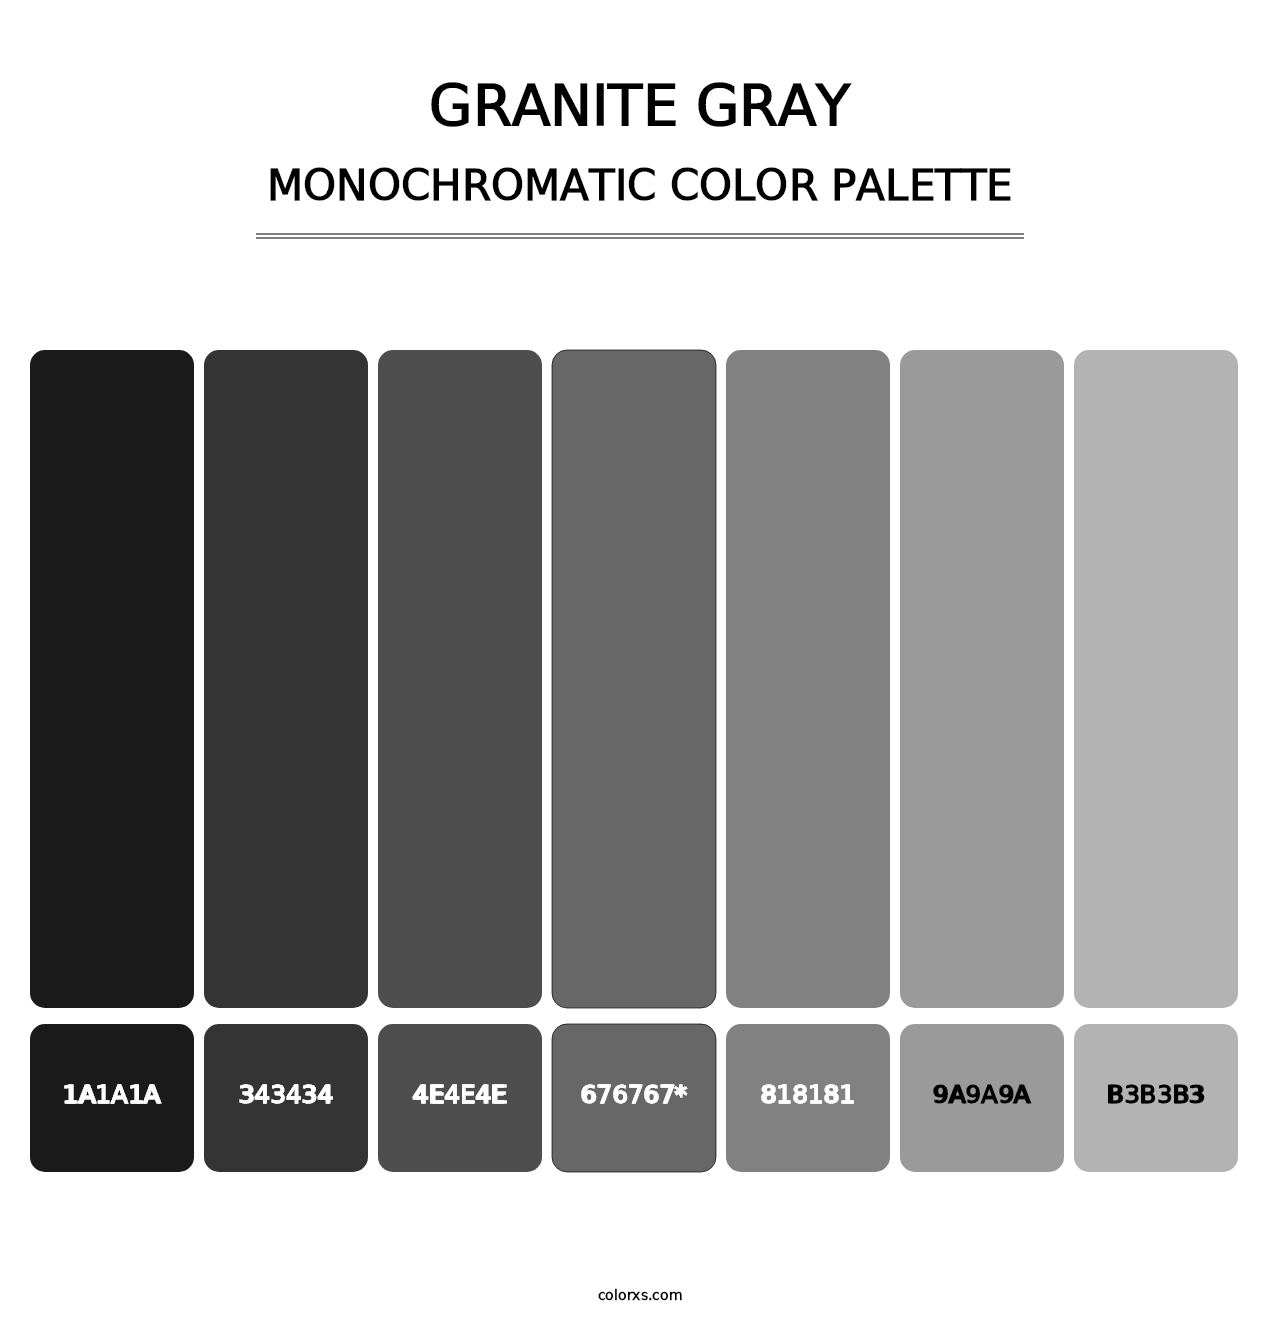 Granite Gray - Monochromatic Color Palette